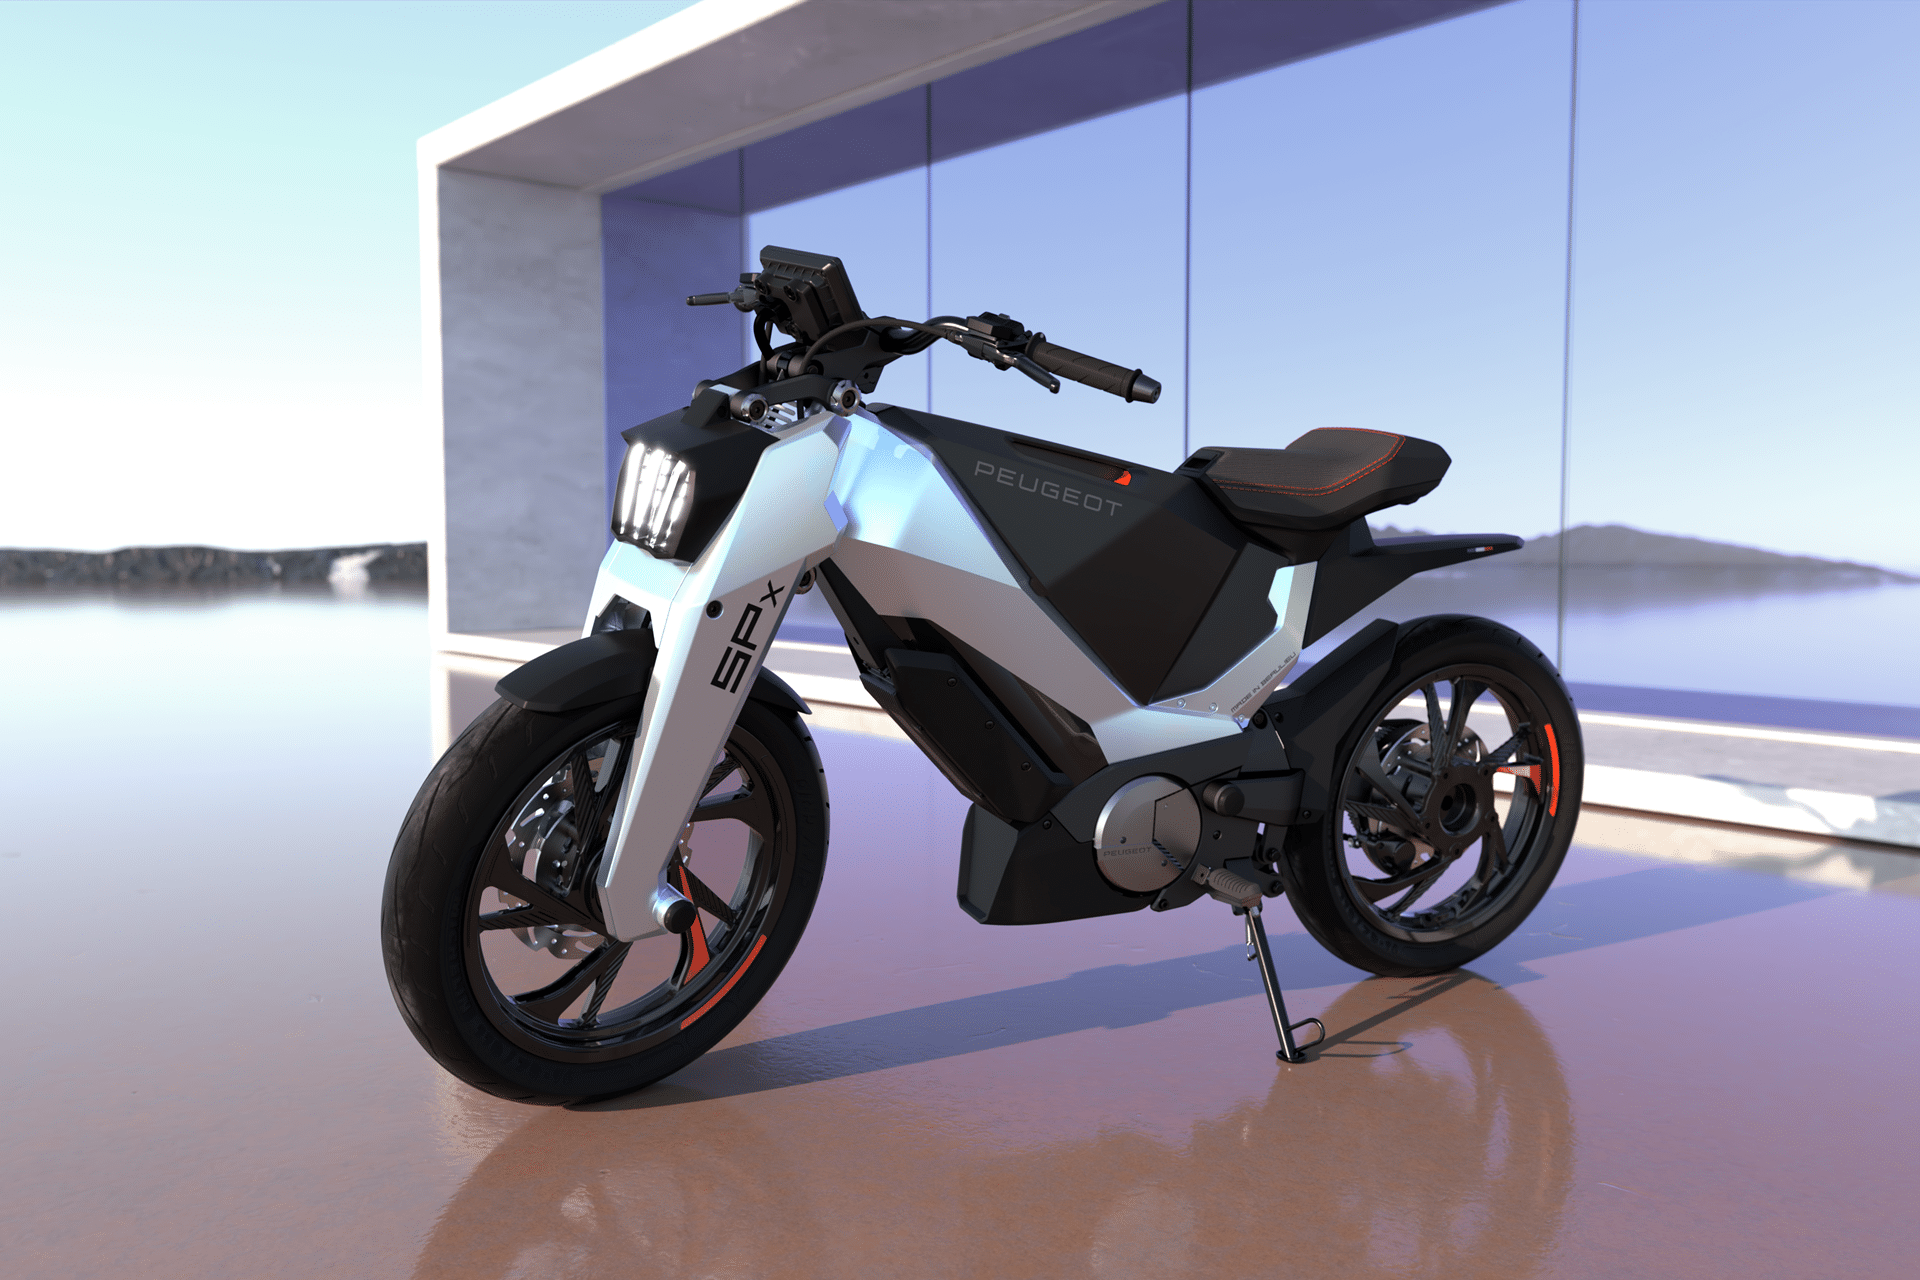 "Proyecto SPx", La visión de futuro bajo el prisma de Peugeot Motorcycles